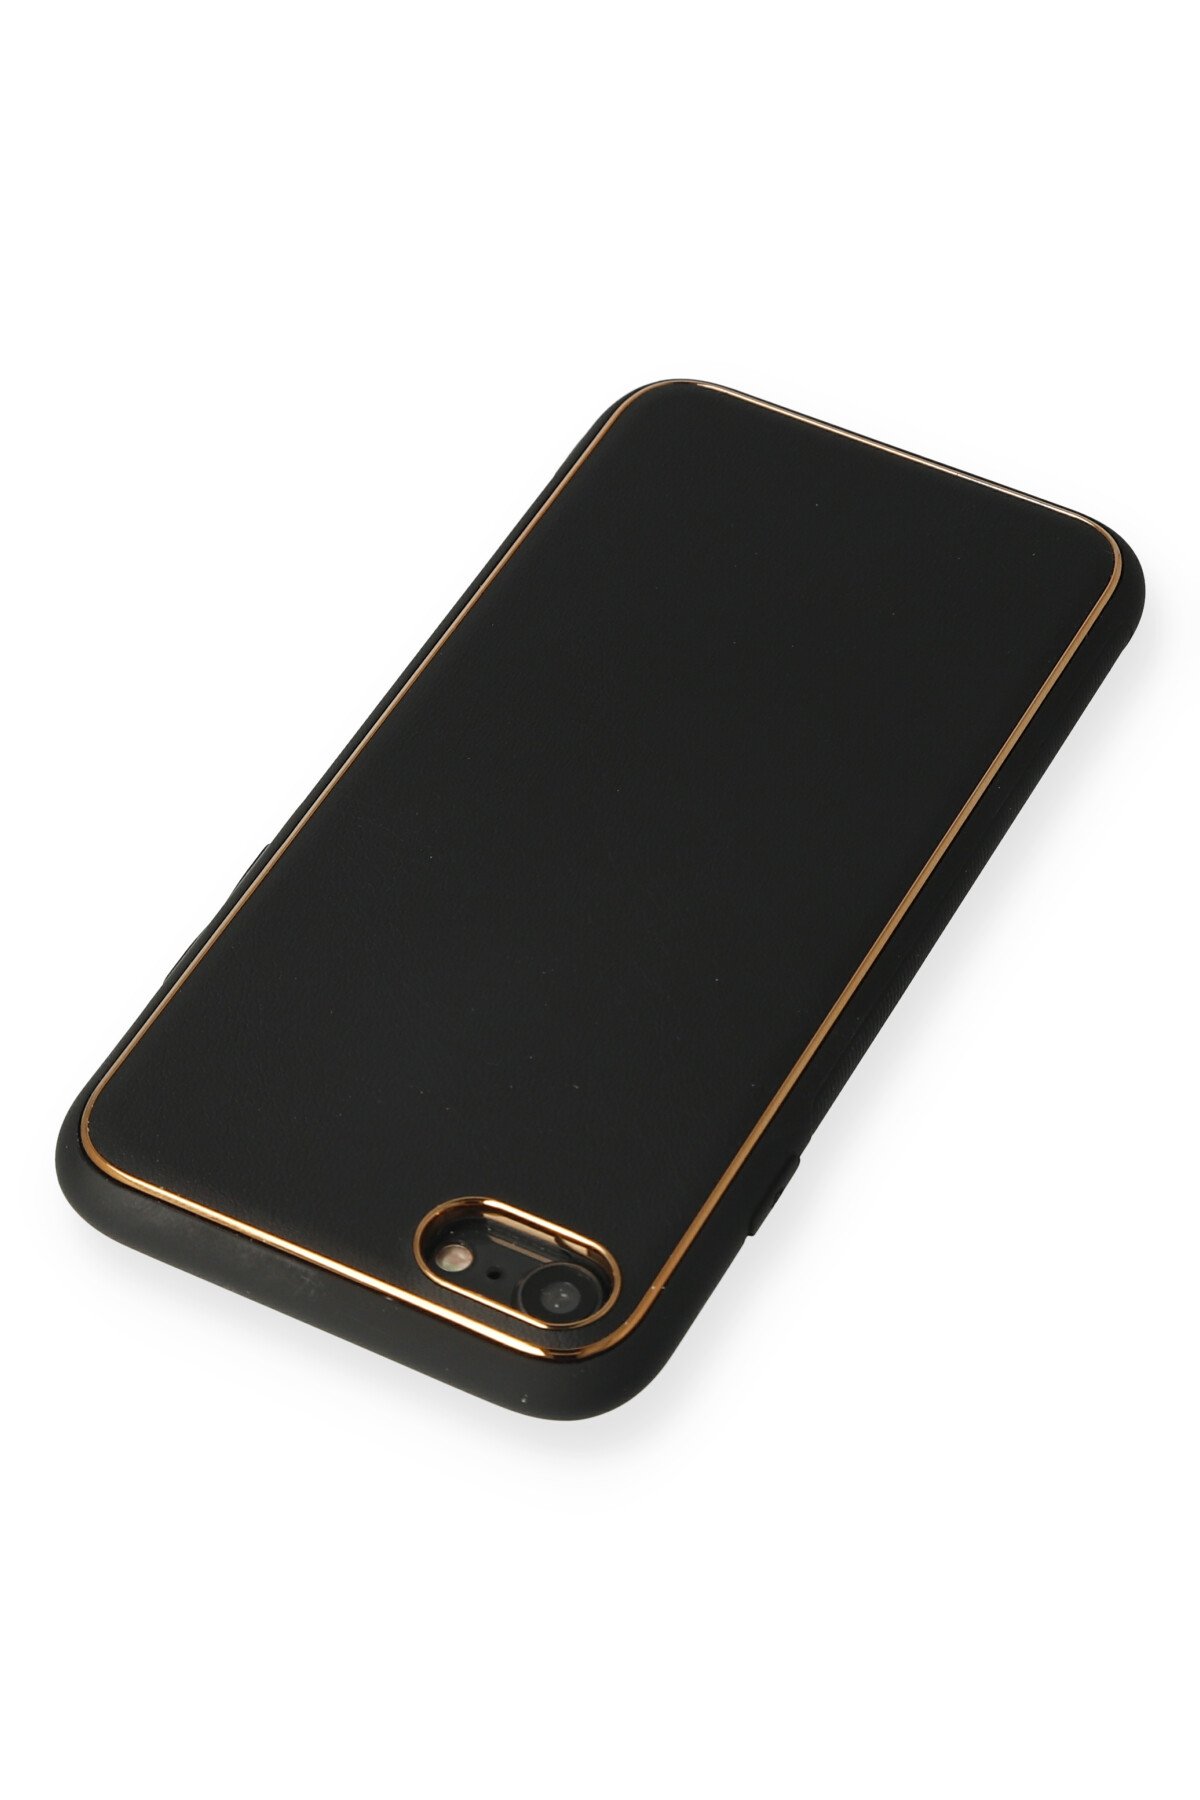 Newface iPhone 8 Kılıf Coco Karbon Silikon - Yeşil